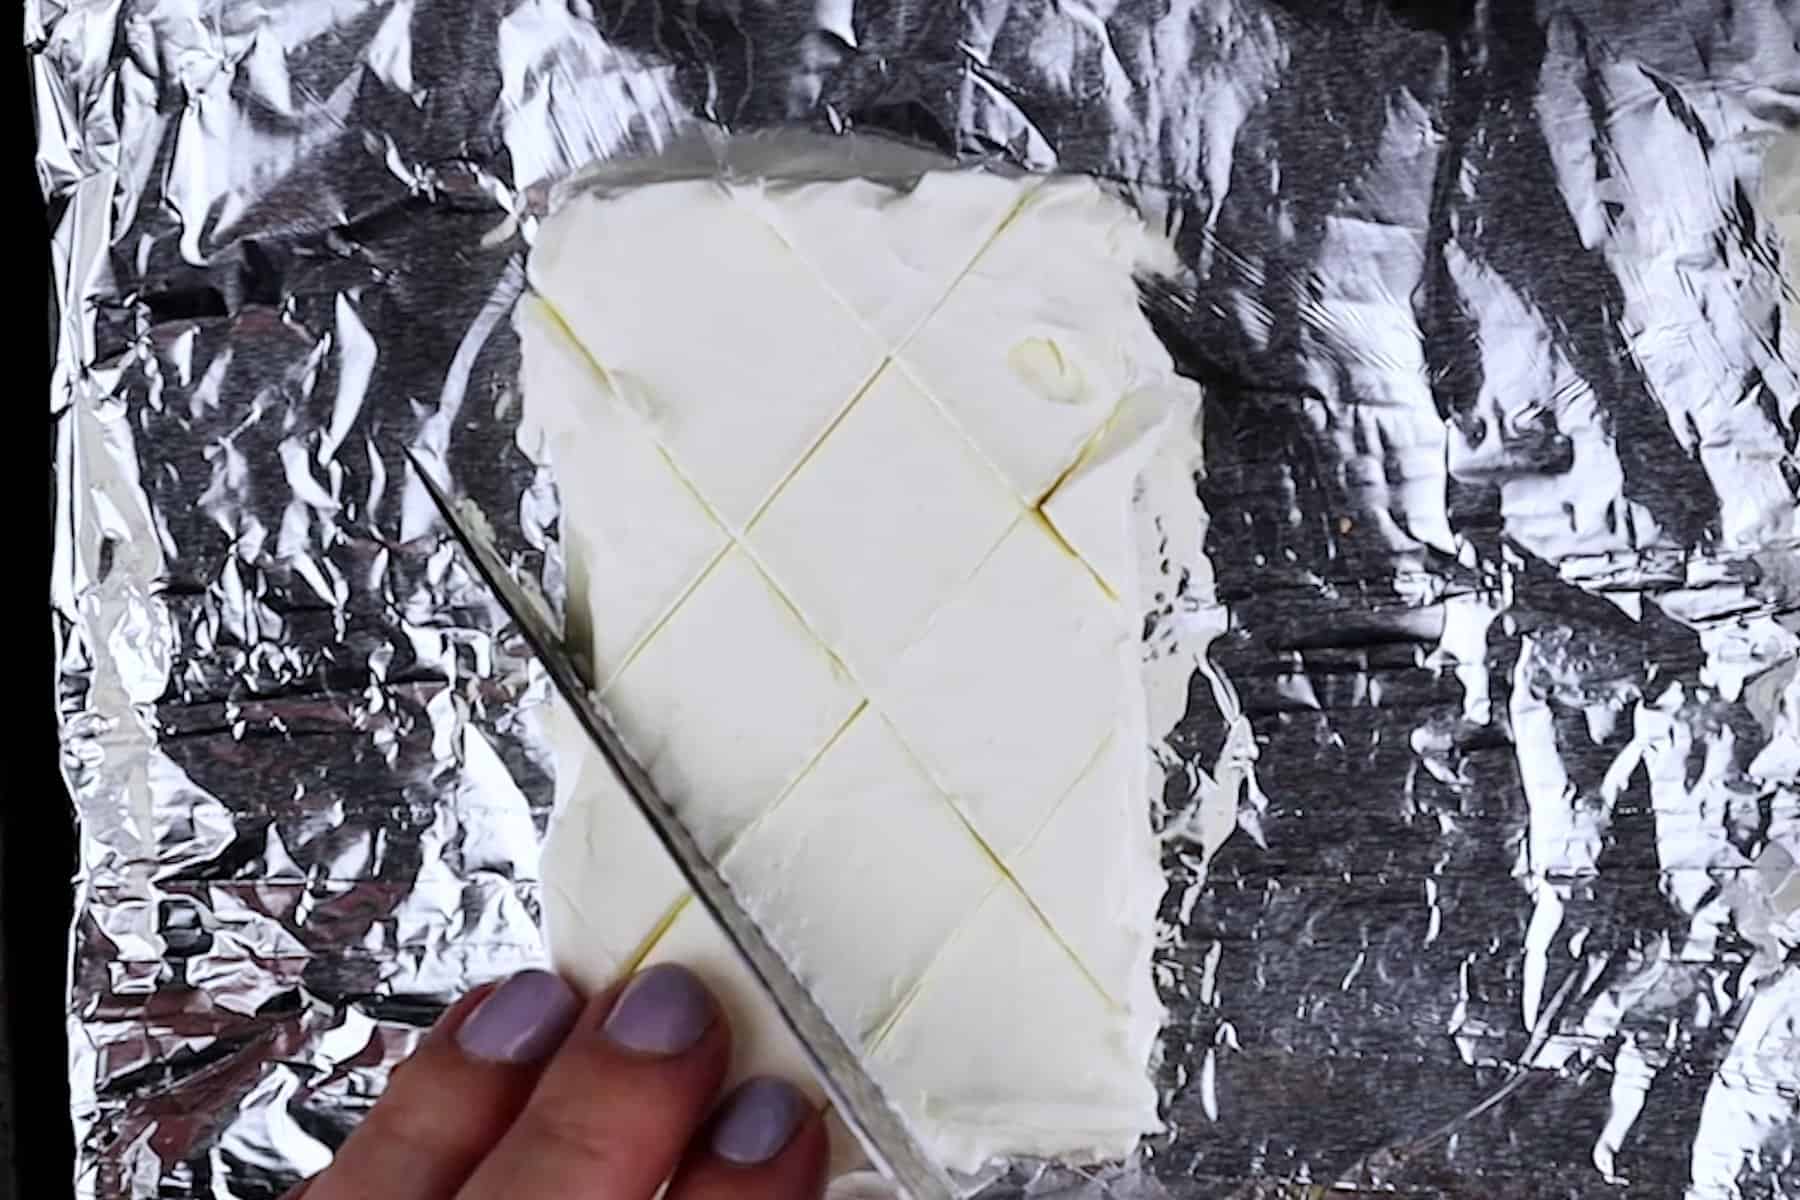 scoring cream cheese